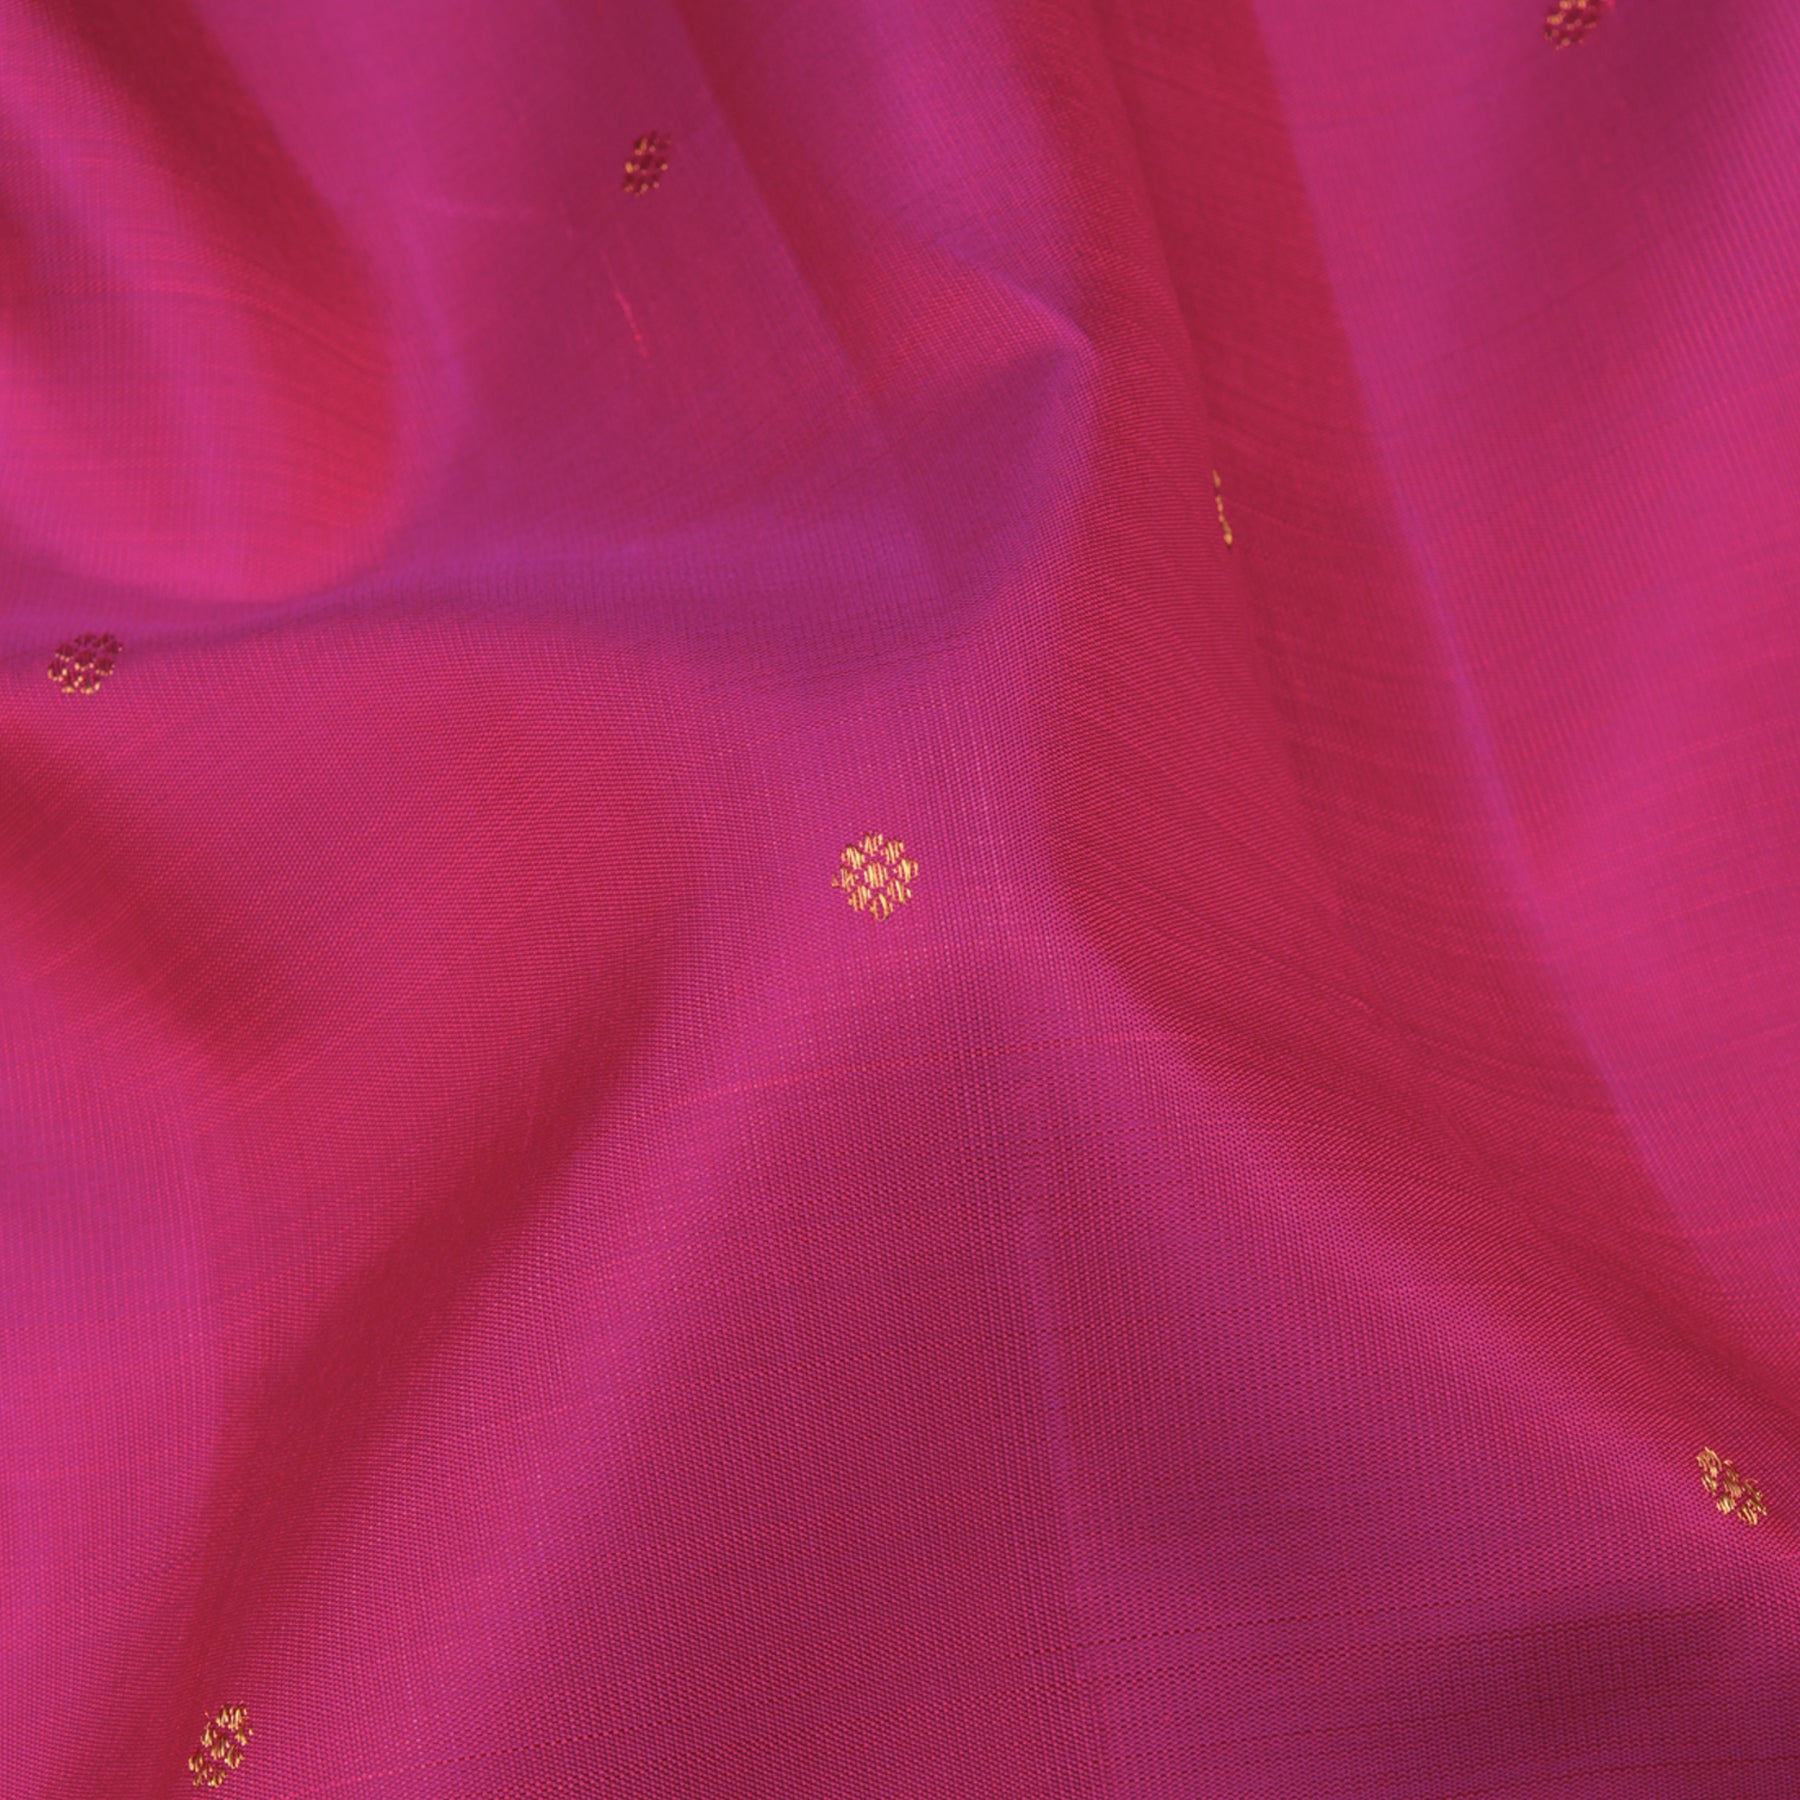 Kanakavalli Kanjivaram Silk Sari 23-611-HS001-14467 - Fabric View